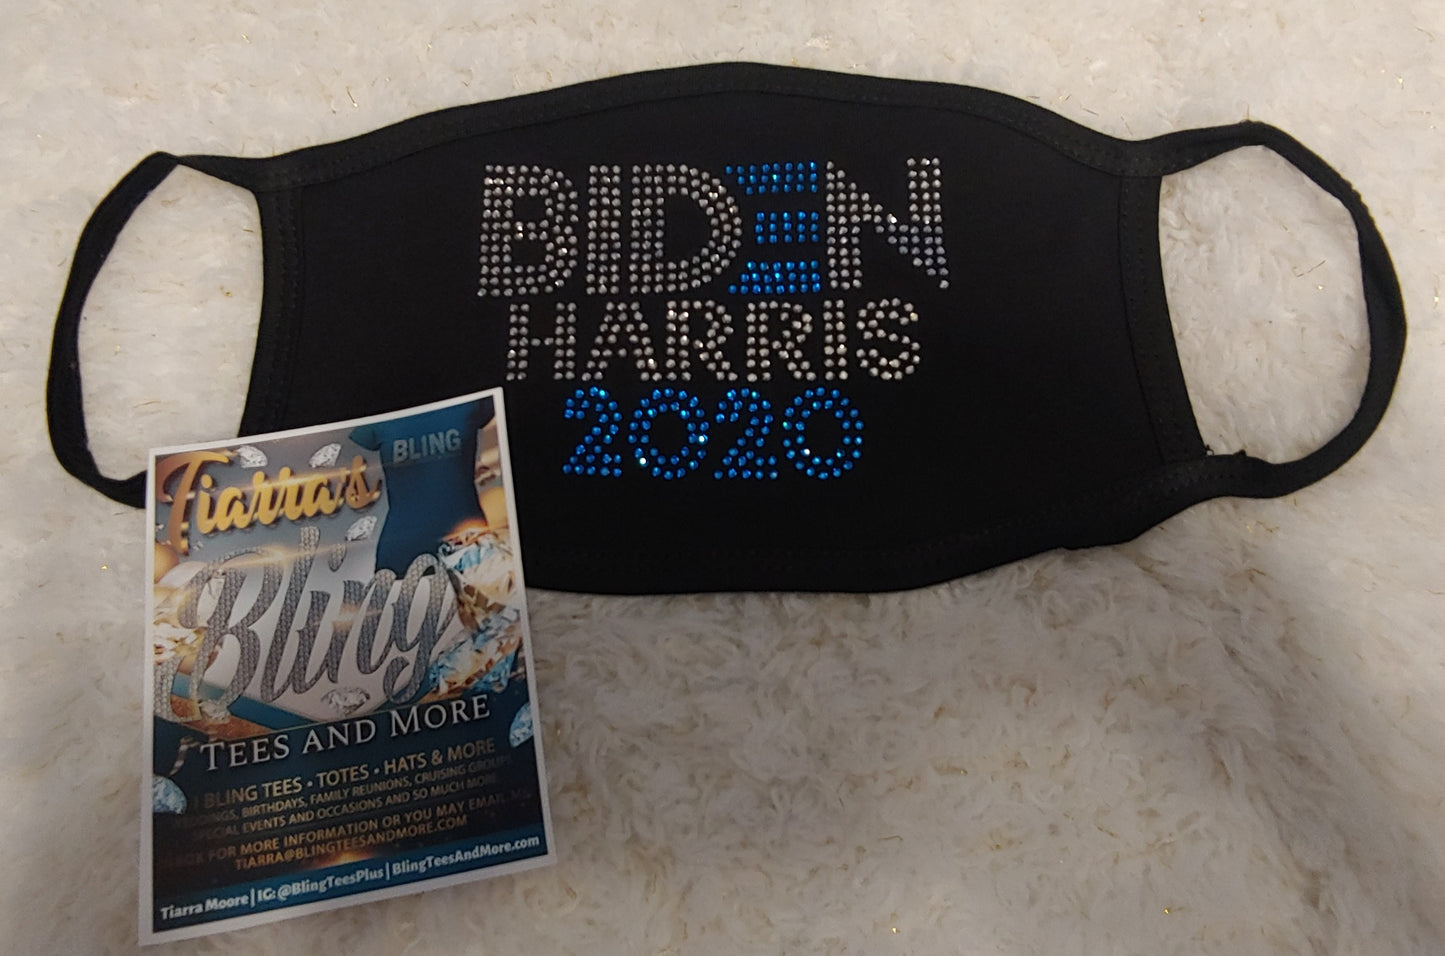 Biden/Harris 2020 Rhinestone Mask